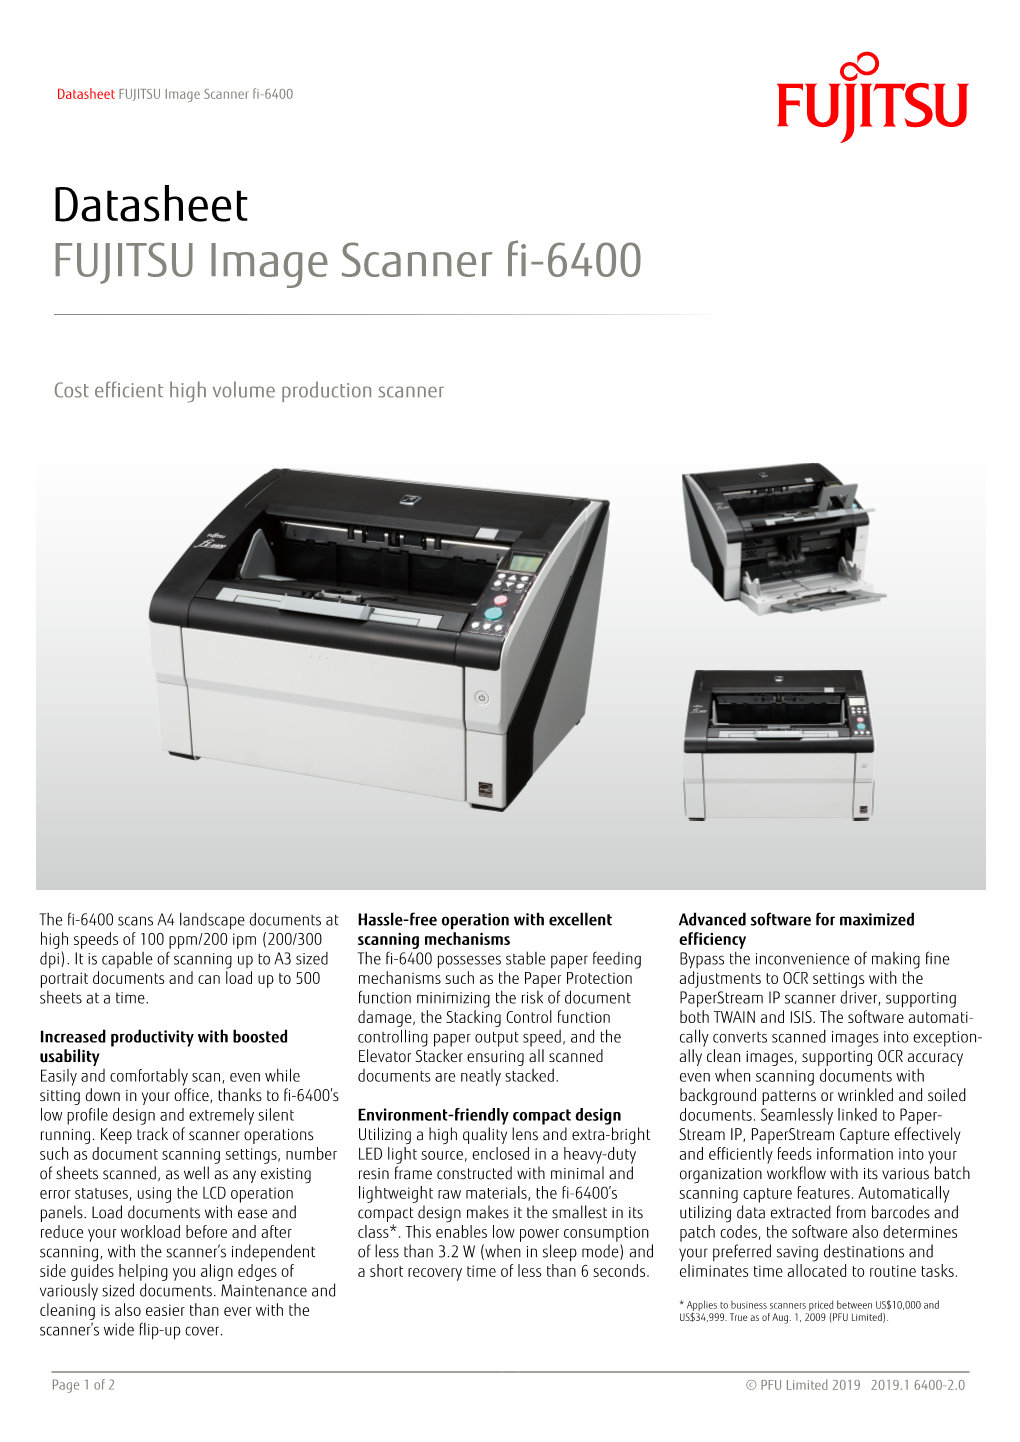 FUJITSU Image Scanner Fi-6400 Datasheet